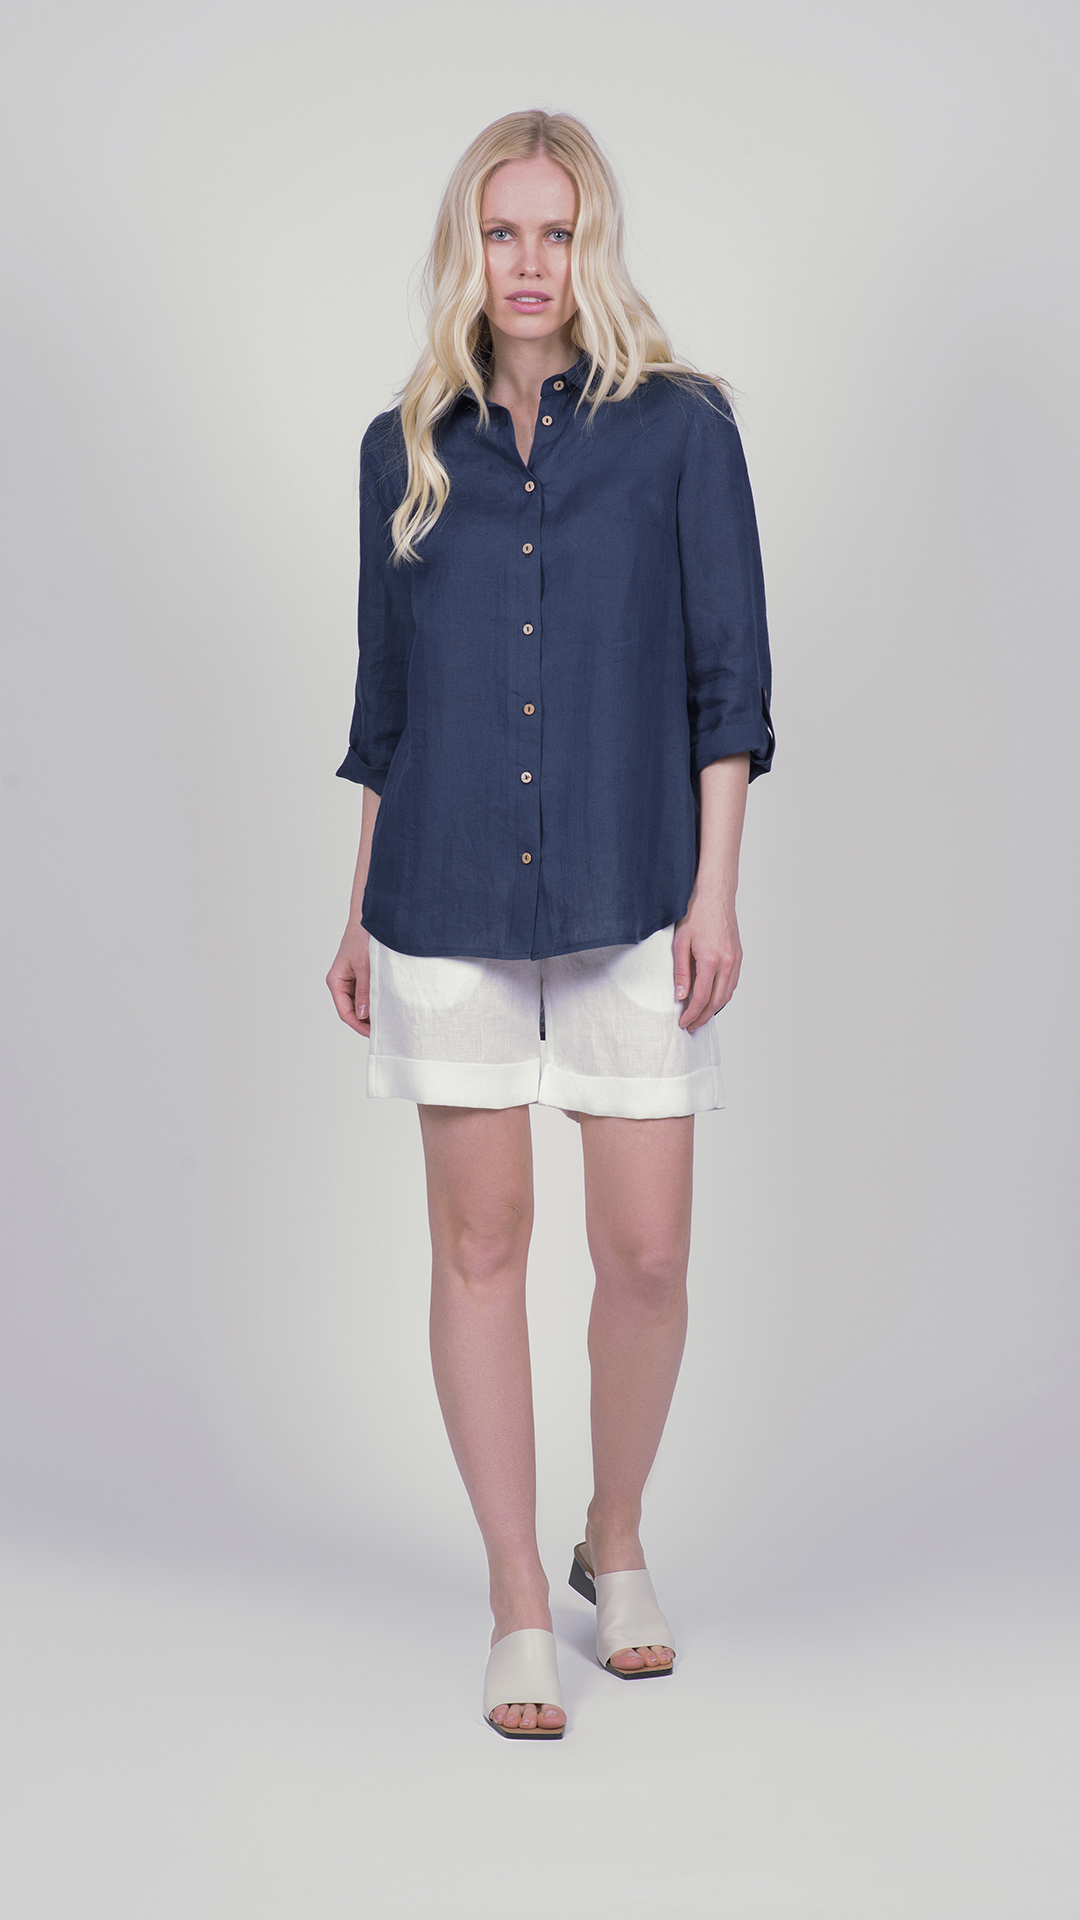 linoshirt01 blu 1 1stAmerican camicia da donna manica tre quarti in 100% lino Made in Italy - camicia collo classico con bottoni e laccio laterale su maniche - puro lino